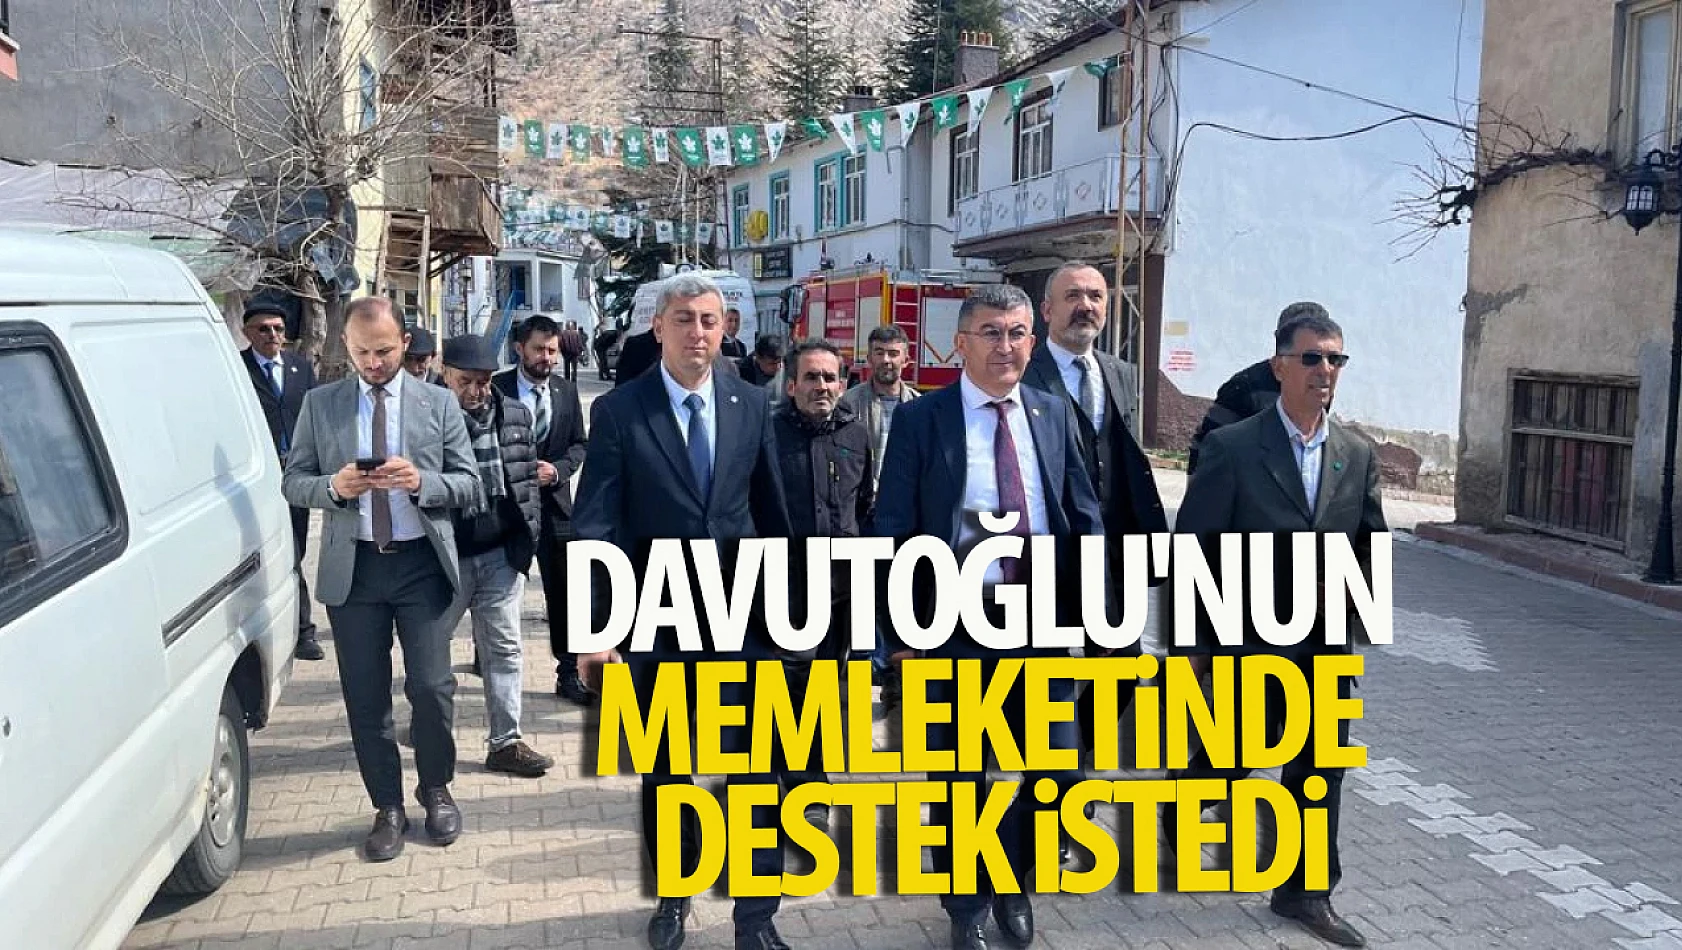 Davutoğlu'nun memleketinde destek istedi